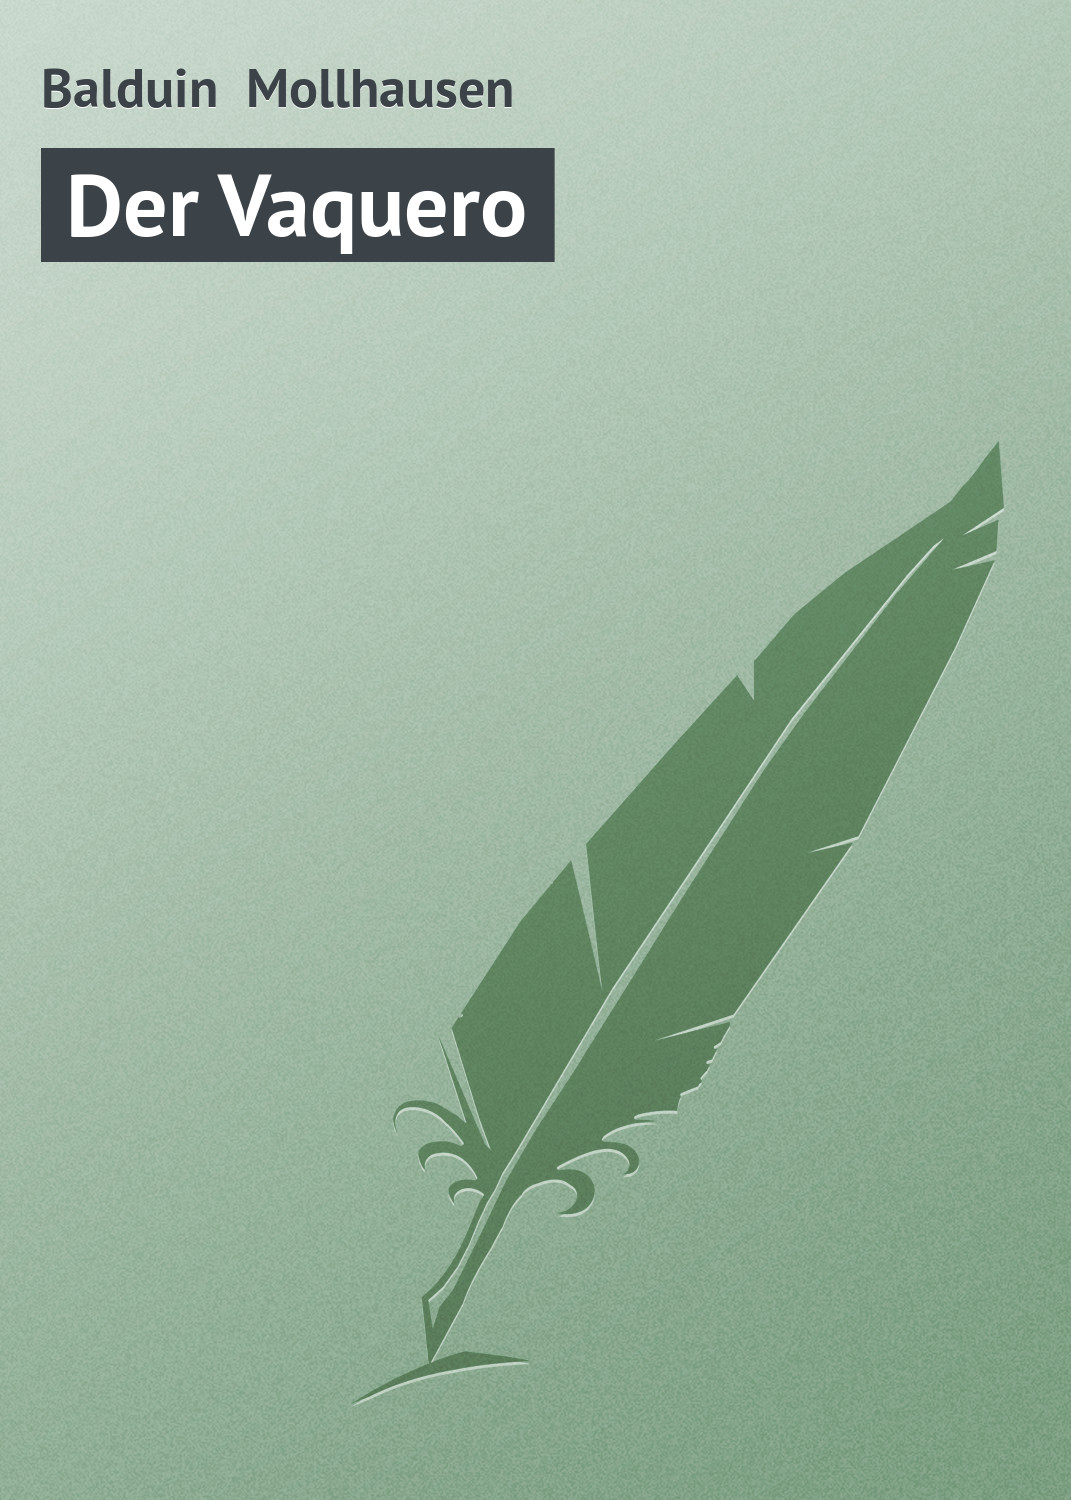 Книга Der Vaquero из серии , созданная Balduin Mollhausen, может относится к жанру Зарубежная старинная литература, Зарубежная классика. Стоимость электронной книги Der Vaquero с идентификатором 21106662 составляет 5.99 руб.